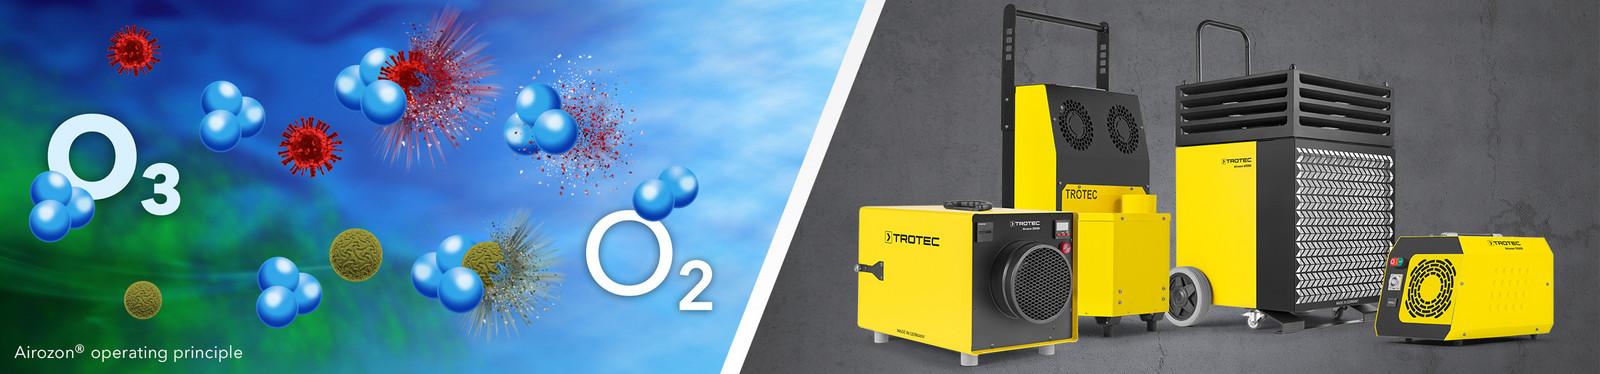 Potenti ozonizzatori della serie Airozon Professional per la disinfezione e la neutralizzazione degli odori